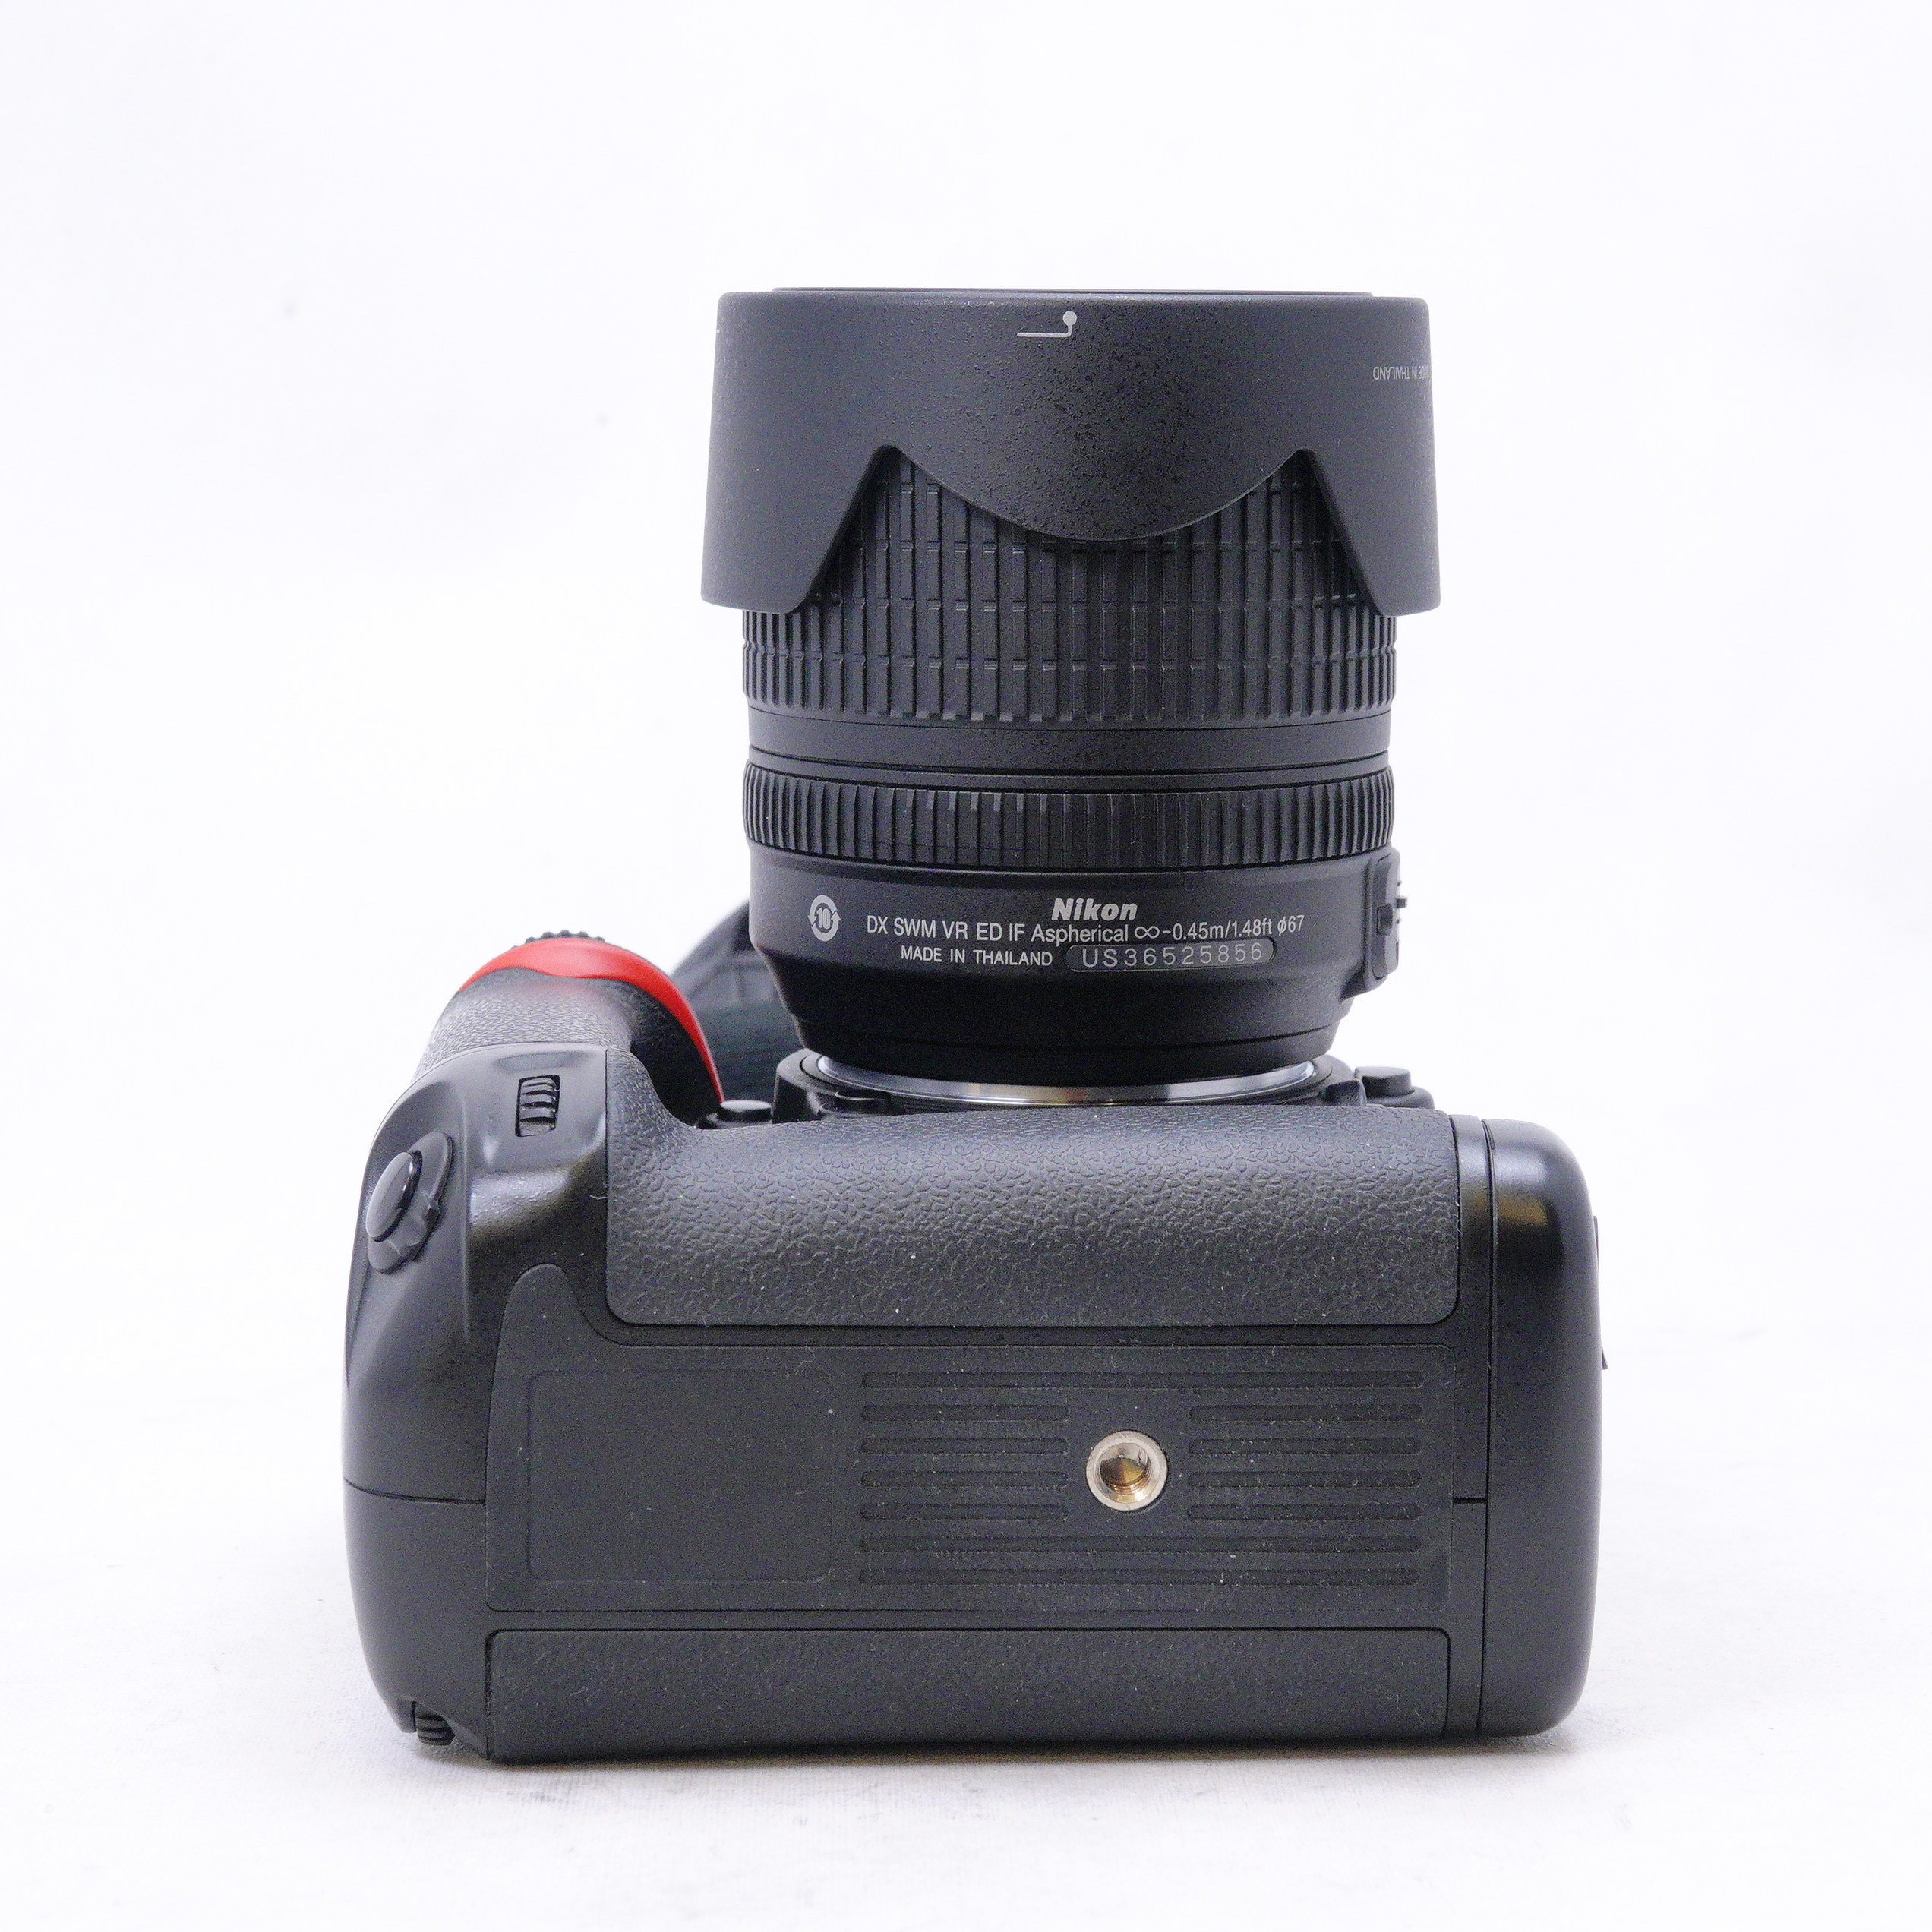 Nikon D7000 con Lente Nikkor 18-105mm f3.5-6 DX más Grip Bower y accesorios - Usado